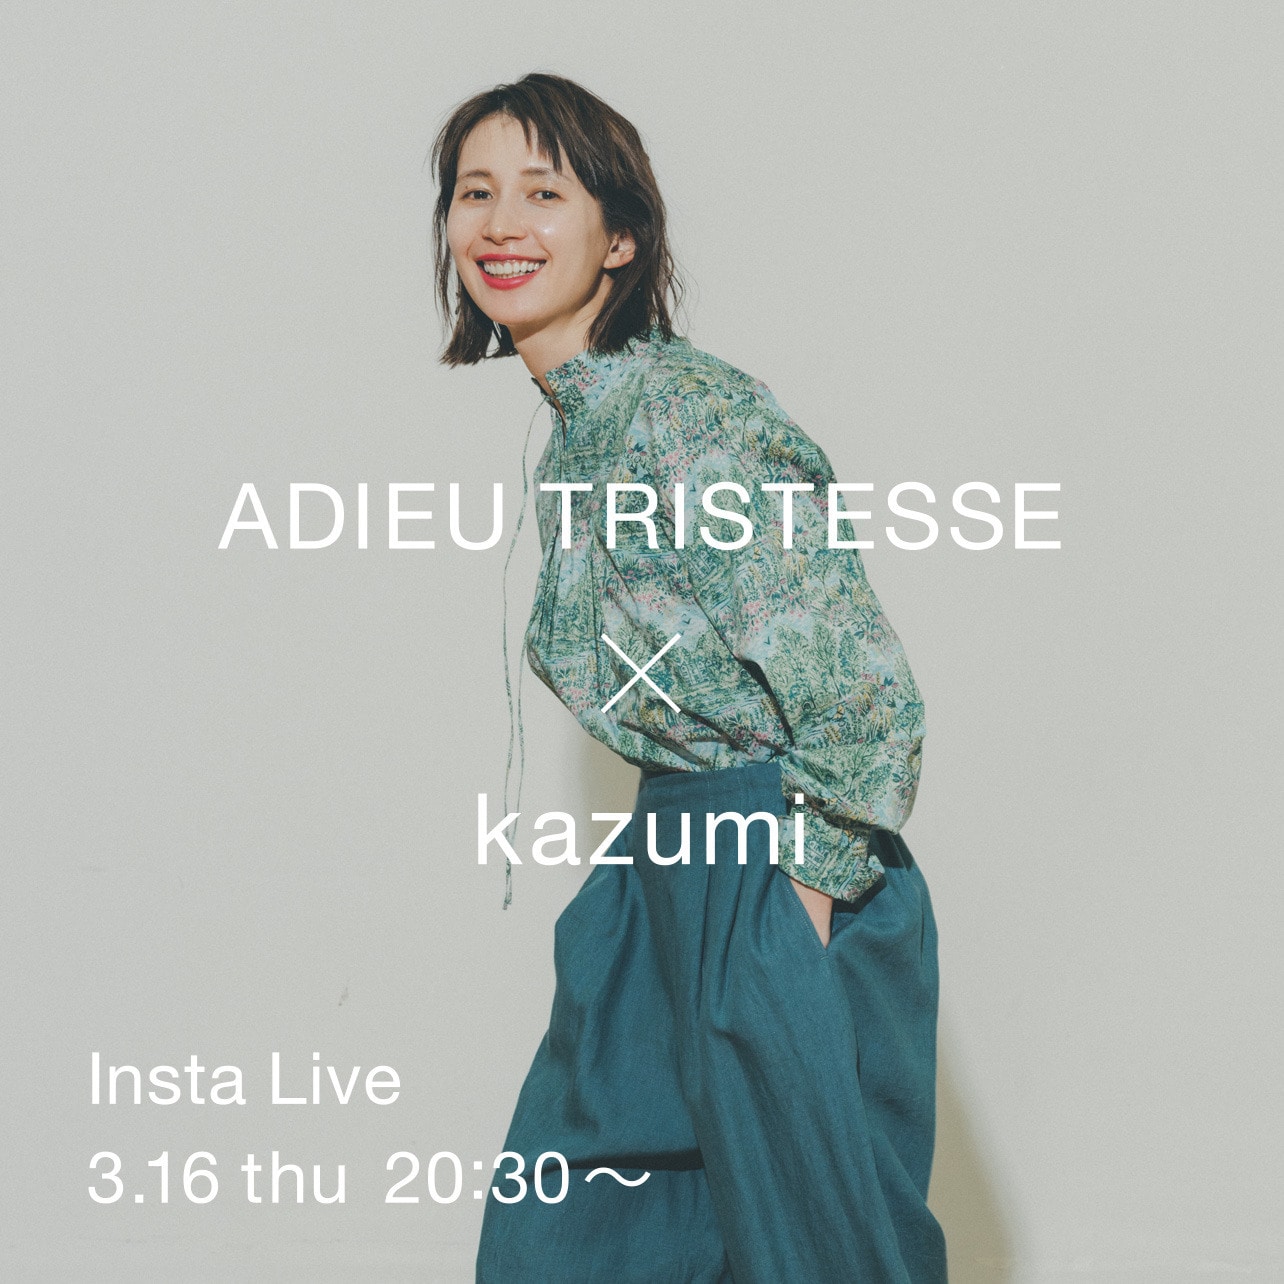 ADIEU TRISTESSE× kazumi Insta Live	